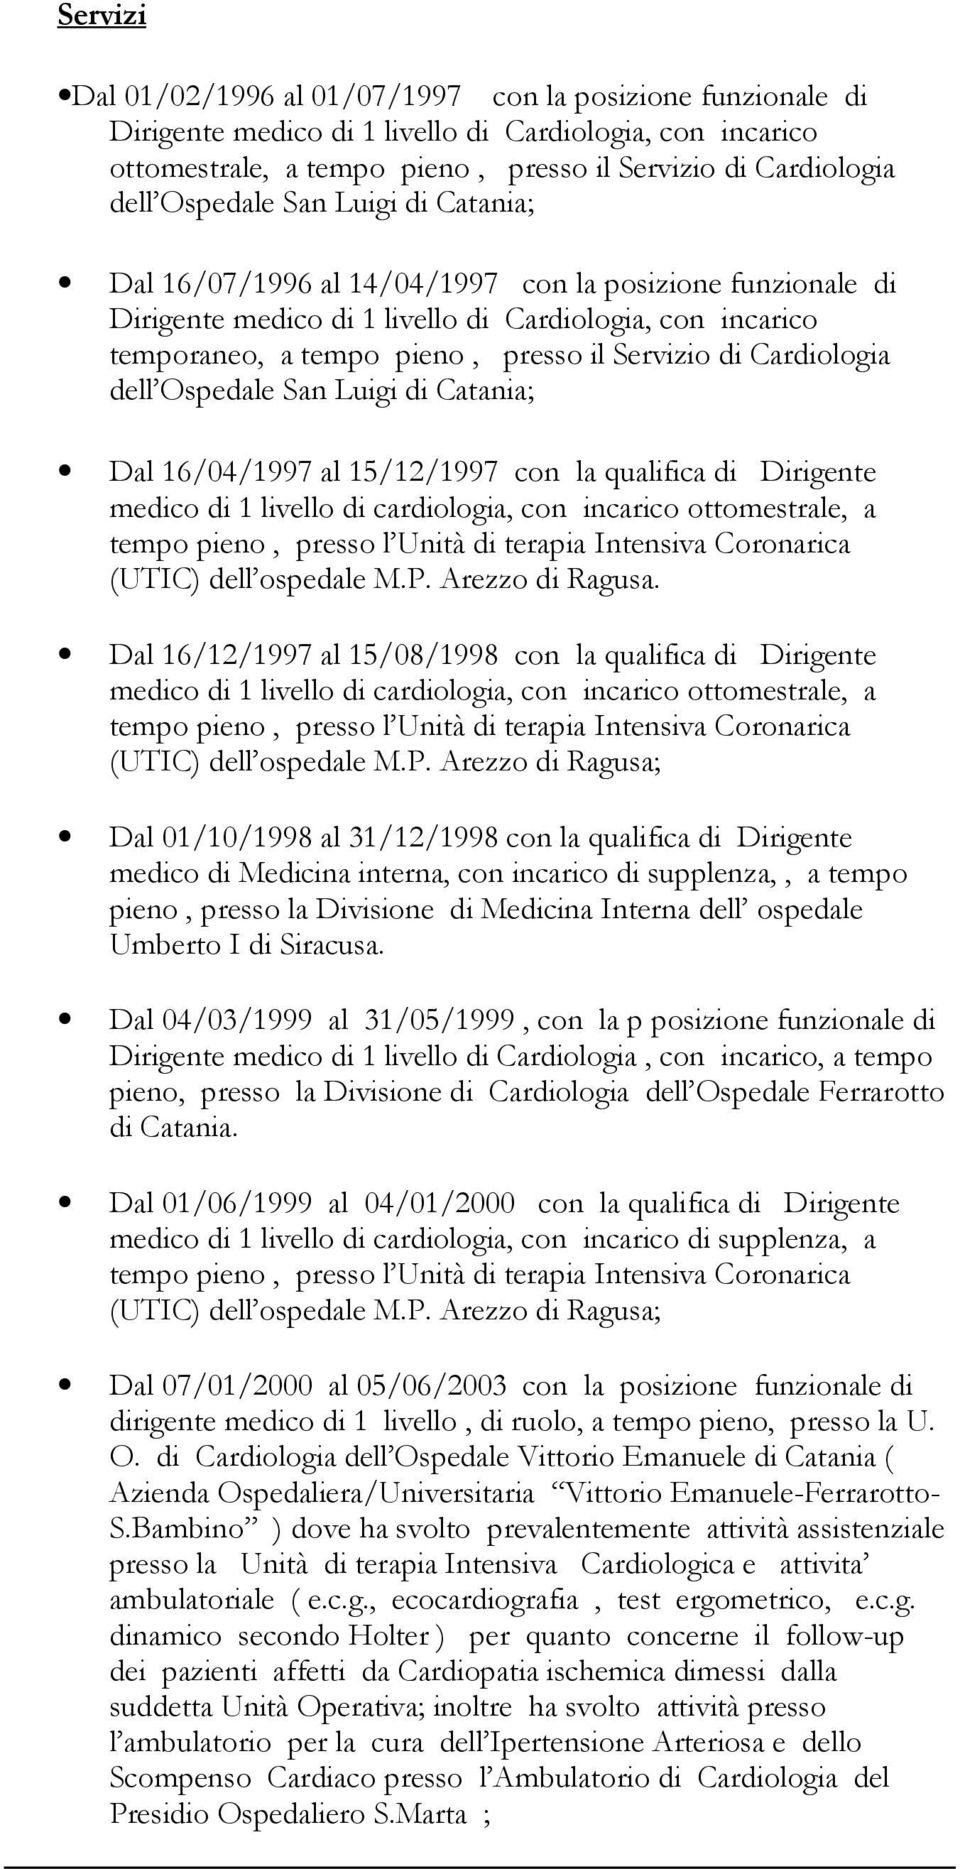 Cardiologia dell Ospedale San Luigi di Catania; Dal 16/04/1997 al 15/12/1997 con la qualifica di Dirigente medico di 1 livello di cardiologia, con incarico ottomestrale, a tempo pieno, presso l Unità